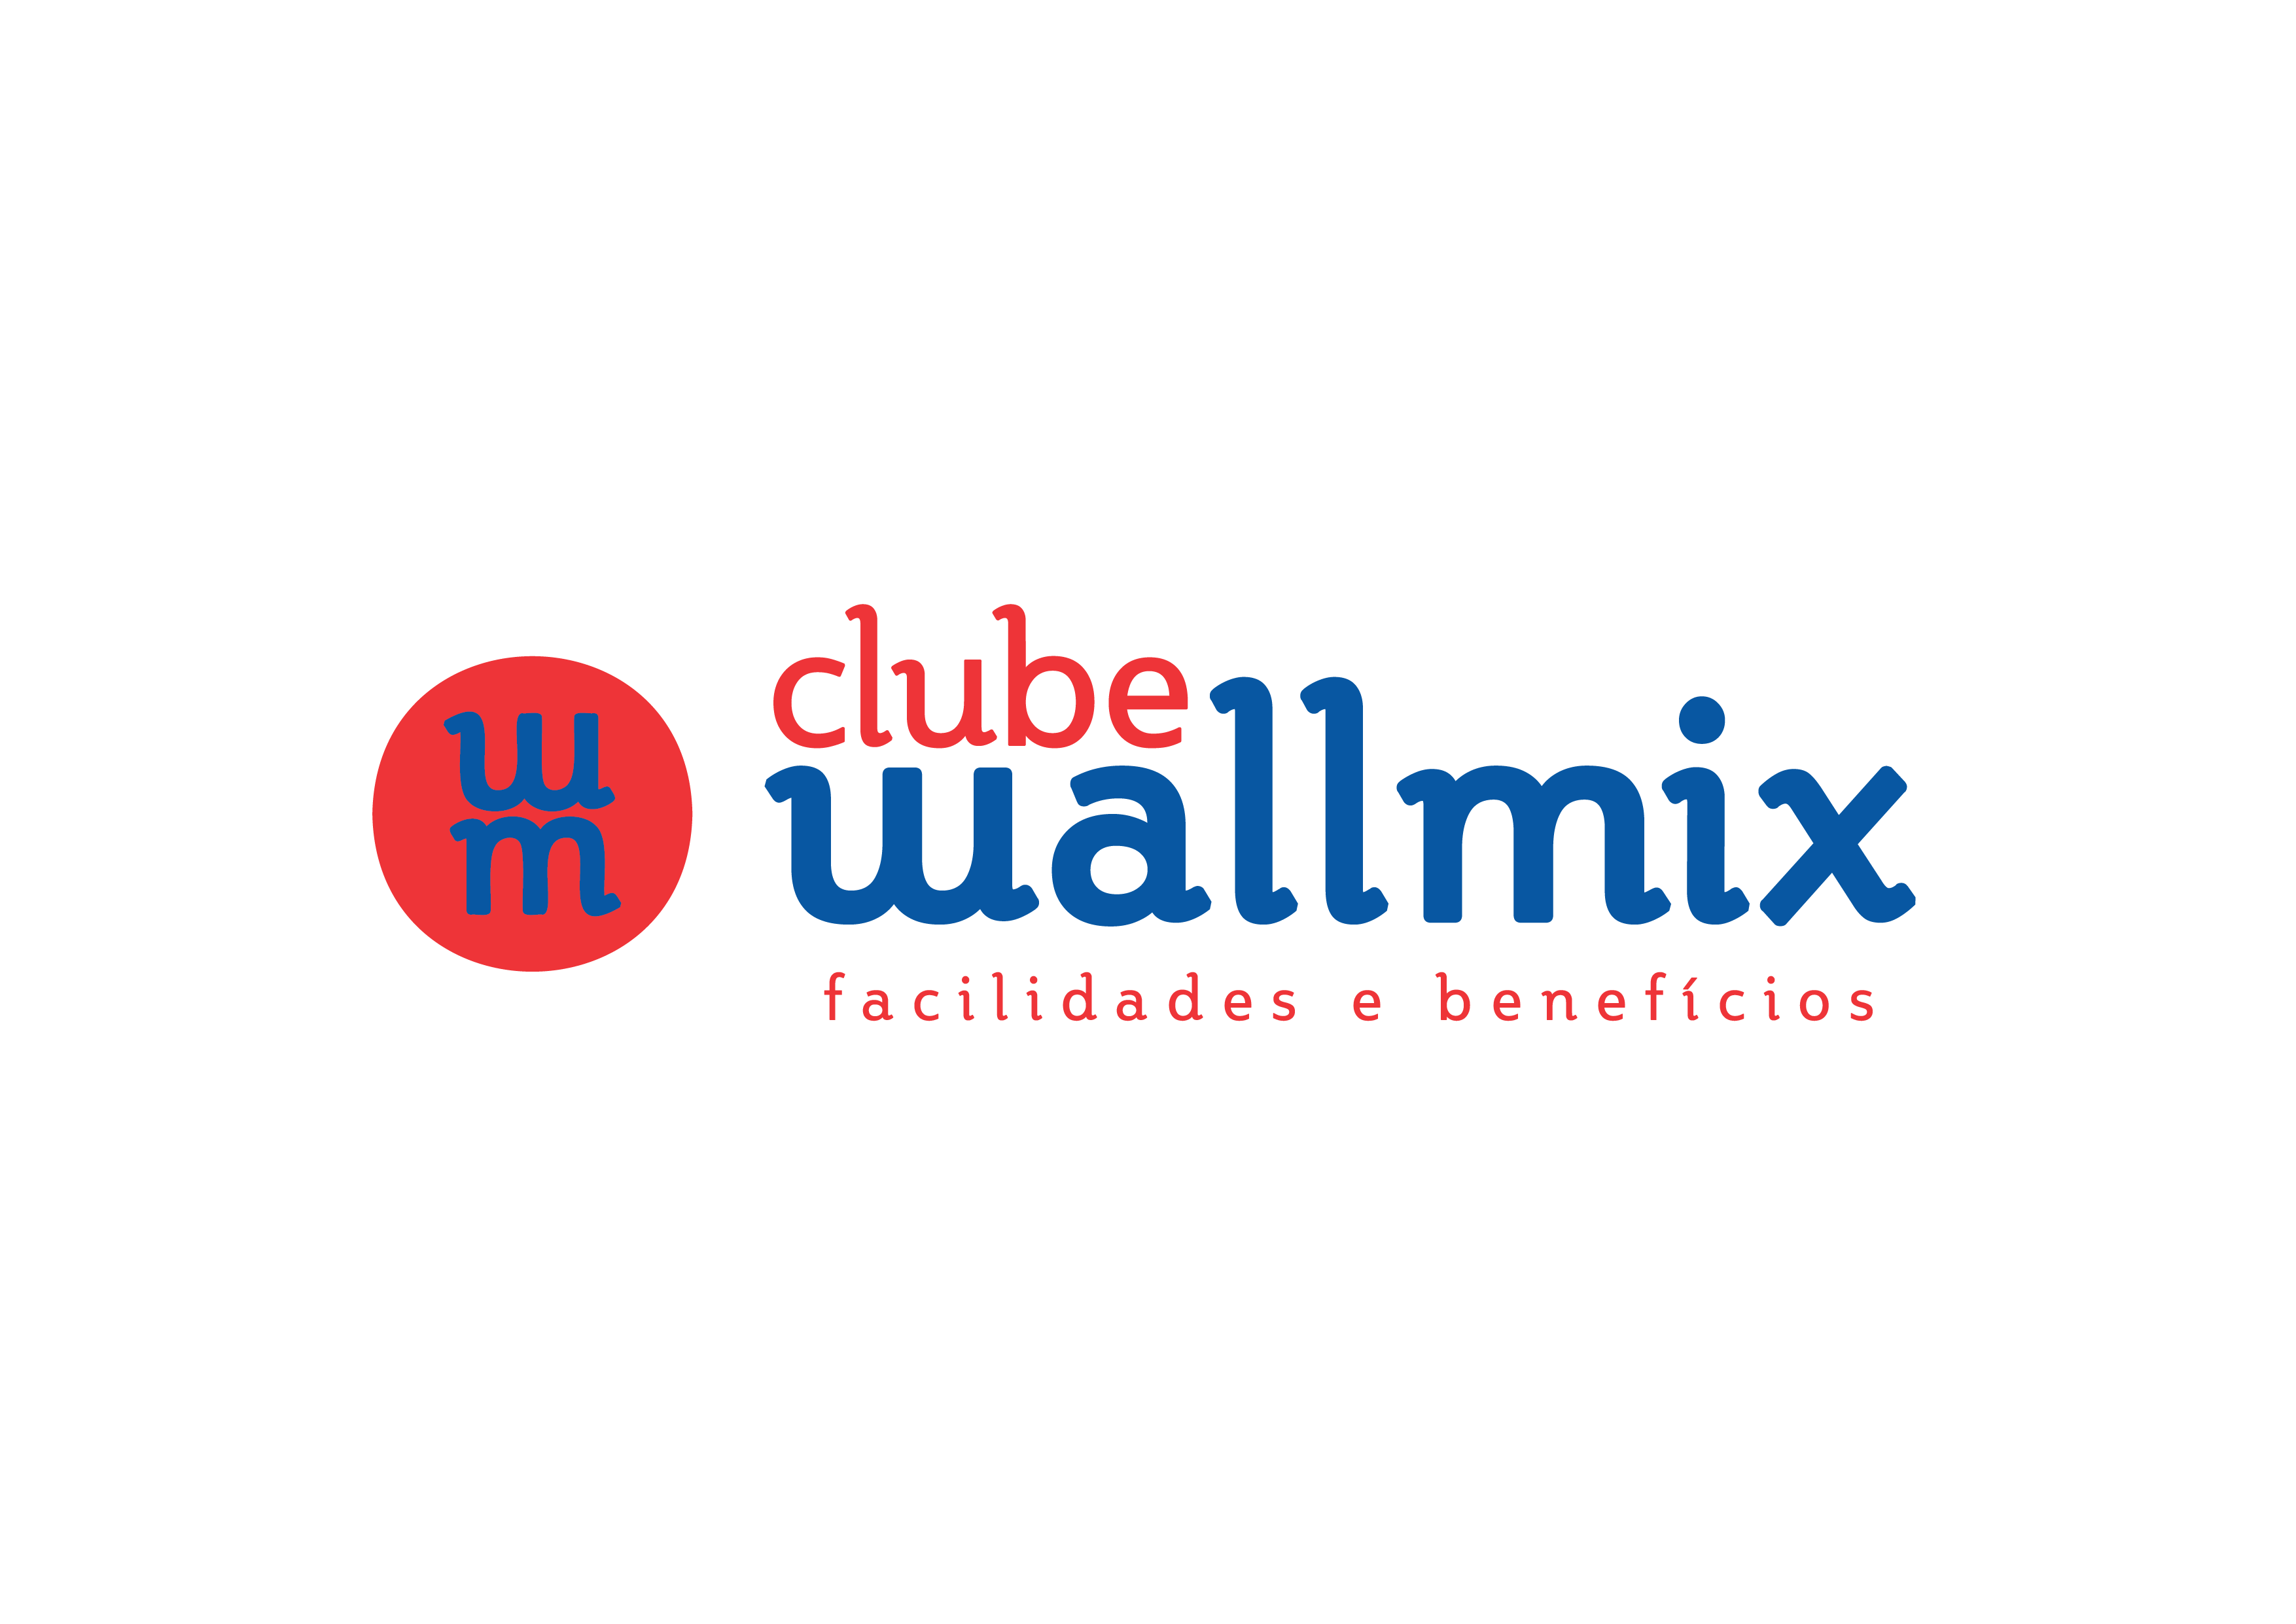 Wallmix Clube de Benefícios